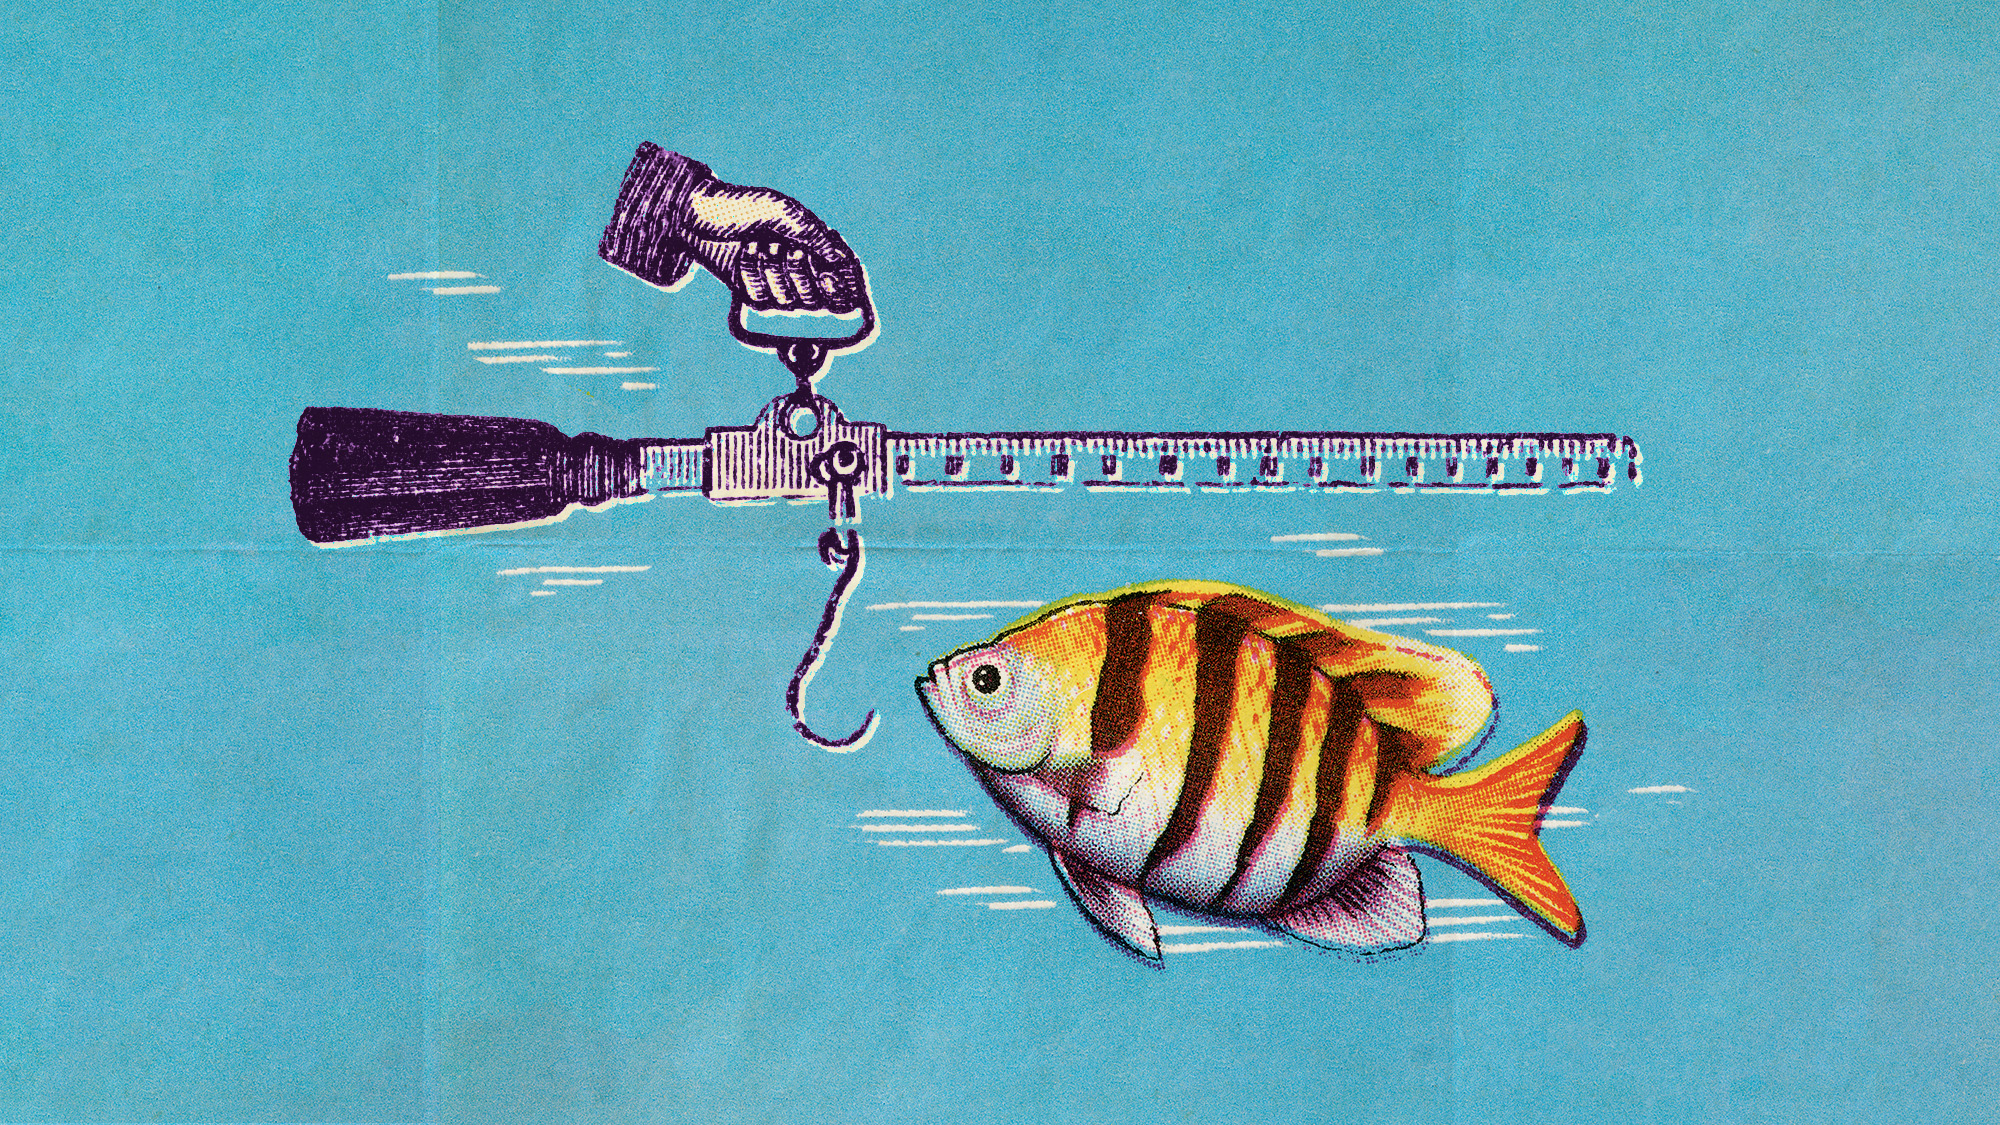  Fish around the world are shrinking 